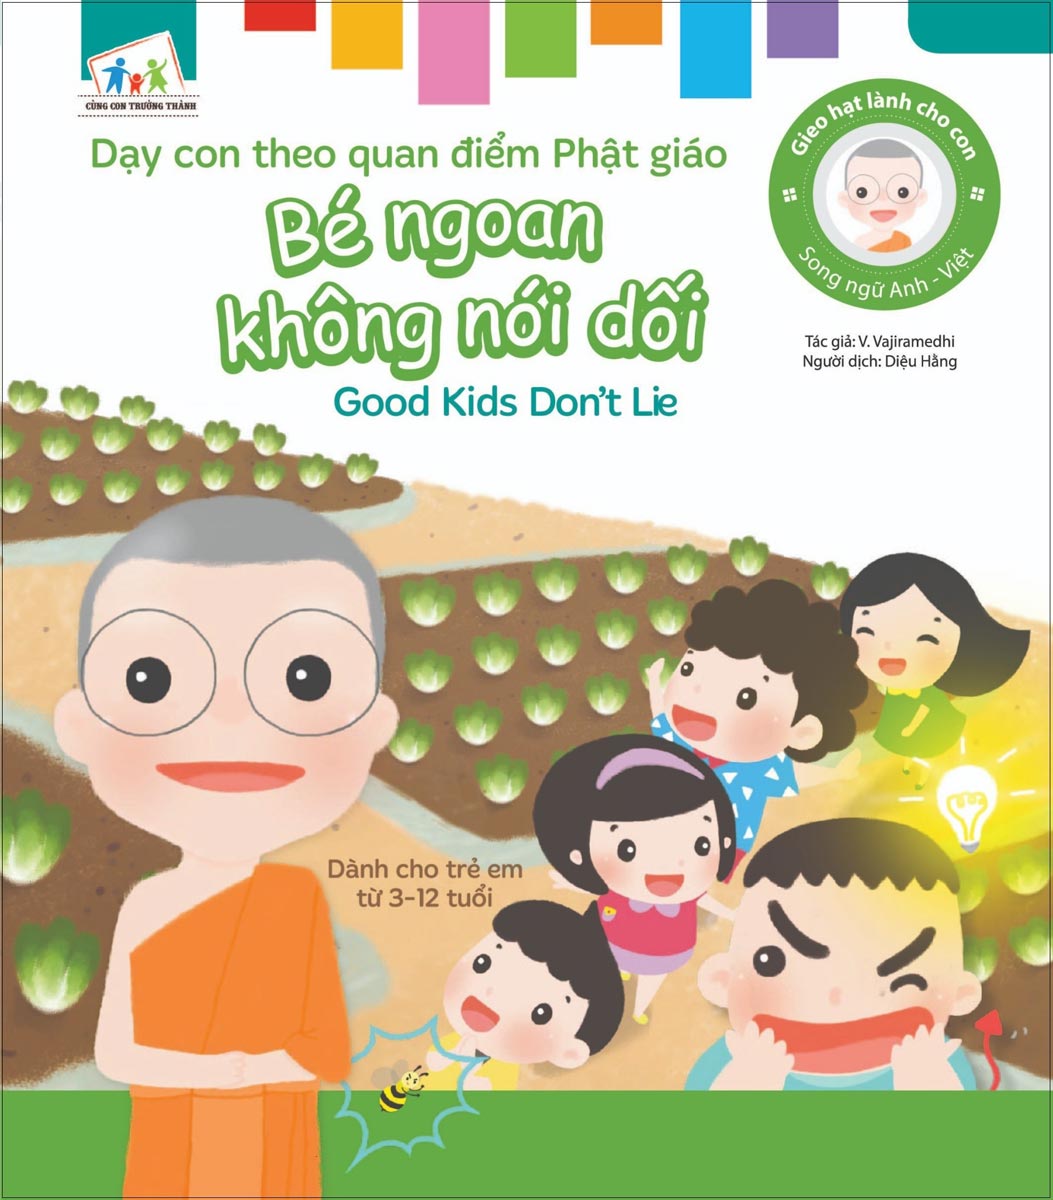 Gieo Hạt Lành Cho Con - Dạy Con Theo Quan Điểm Phật Giáo - Good Kids Don’T Lie - Bé Ngoan Không Nói Dối